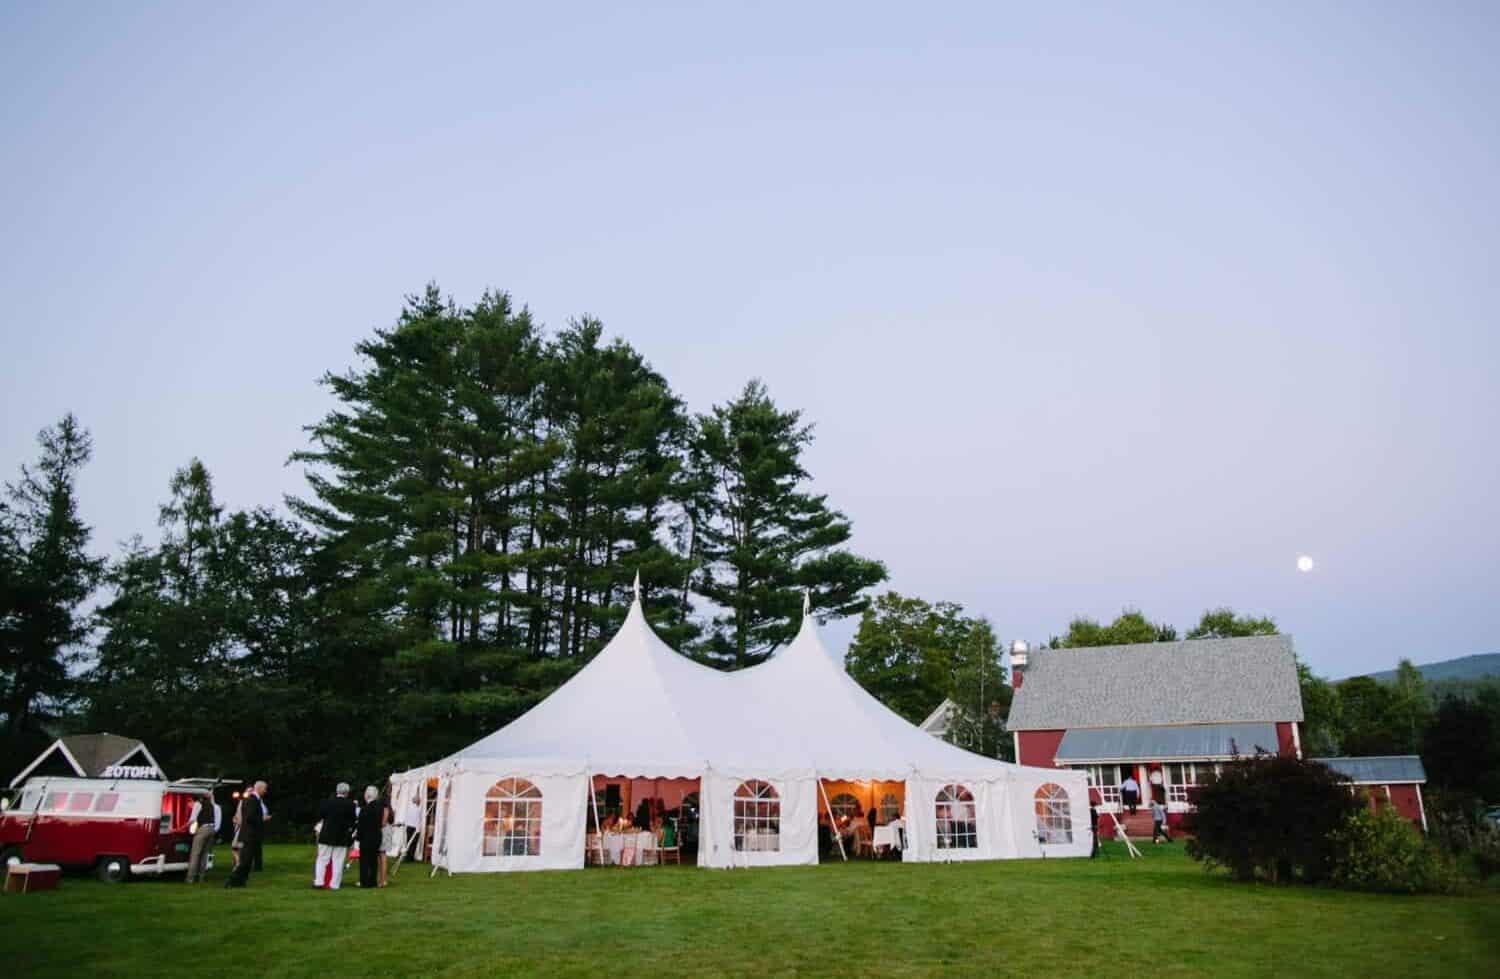 1824 House Inn + Barn - Summer Outdoor Event Tent